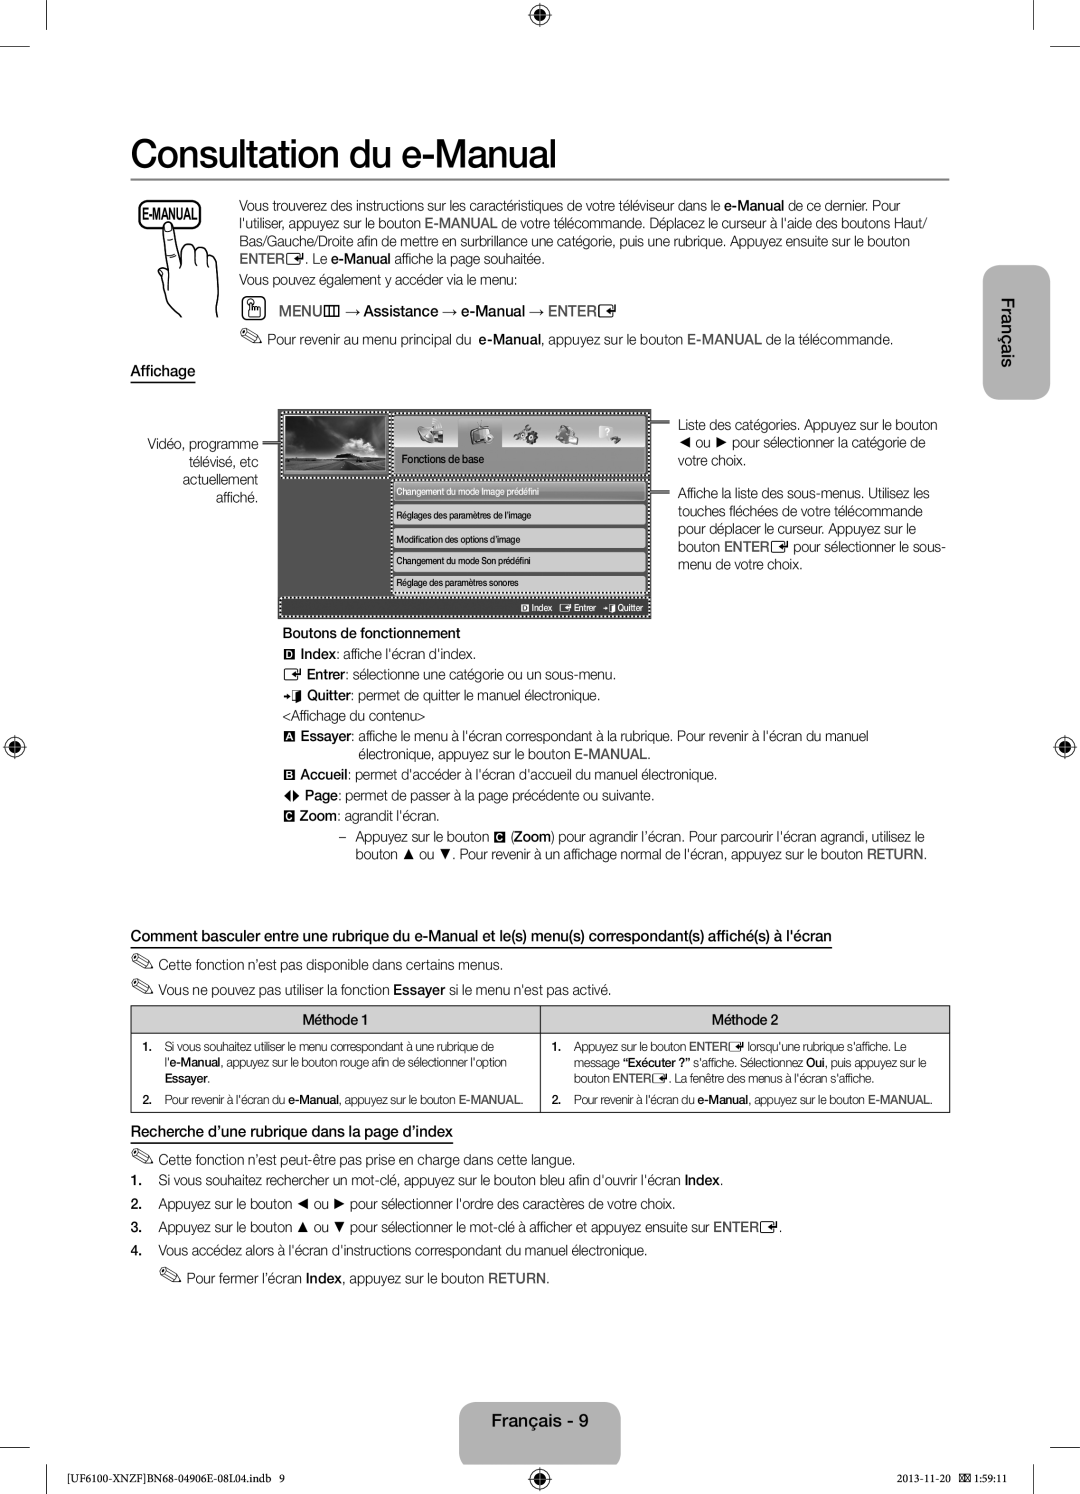 Samsung UE32F6100AWXXC Consultation du e-Manual, OO MENUm→ Assistance → e-Manual → ENTERE, Affichage, Français, E-Manual 